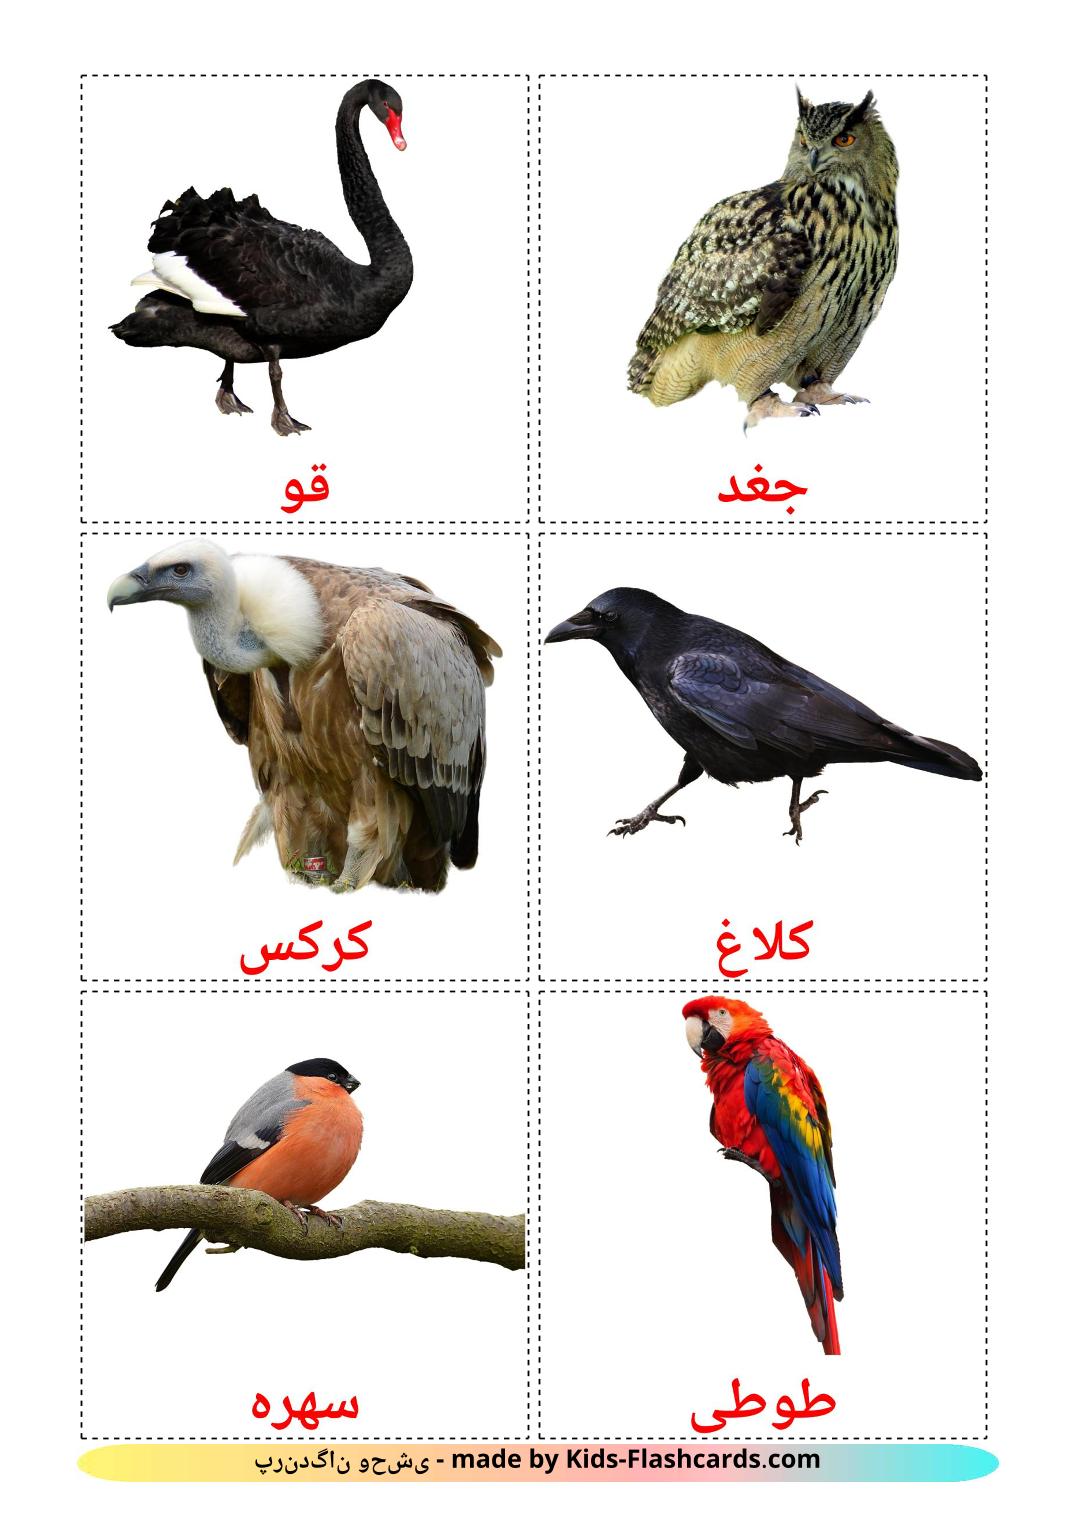 Pássaros Selvagens - 18 Flashcards persaes gratuitos para impressão